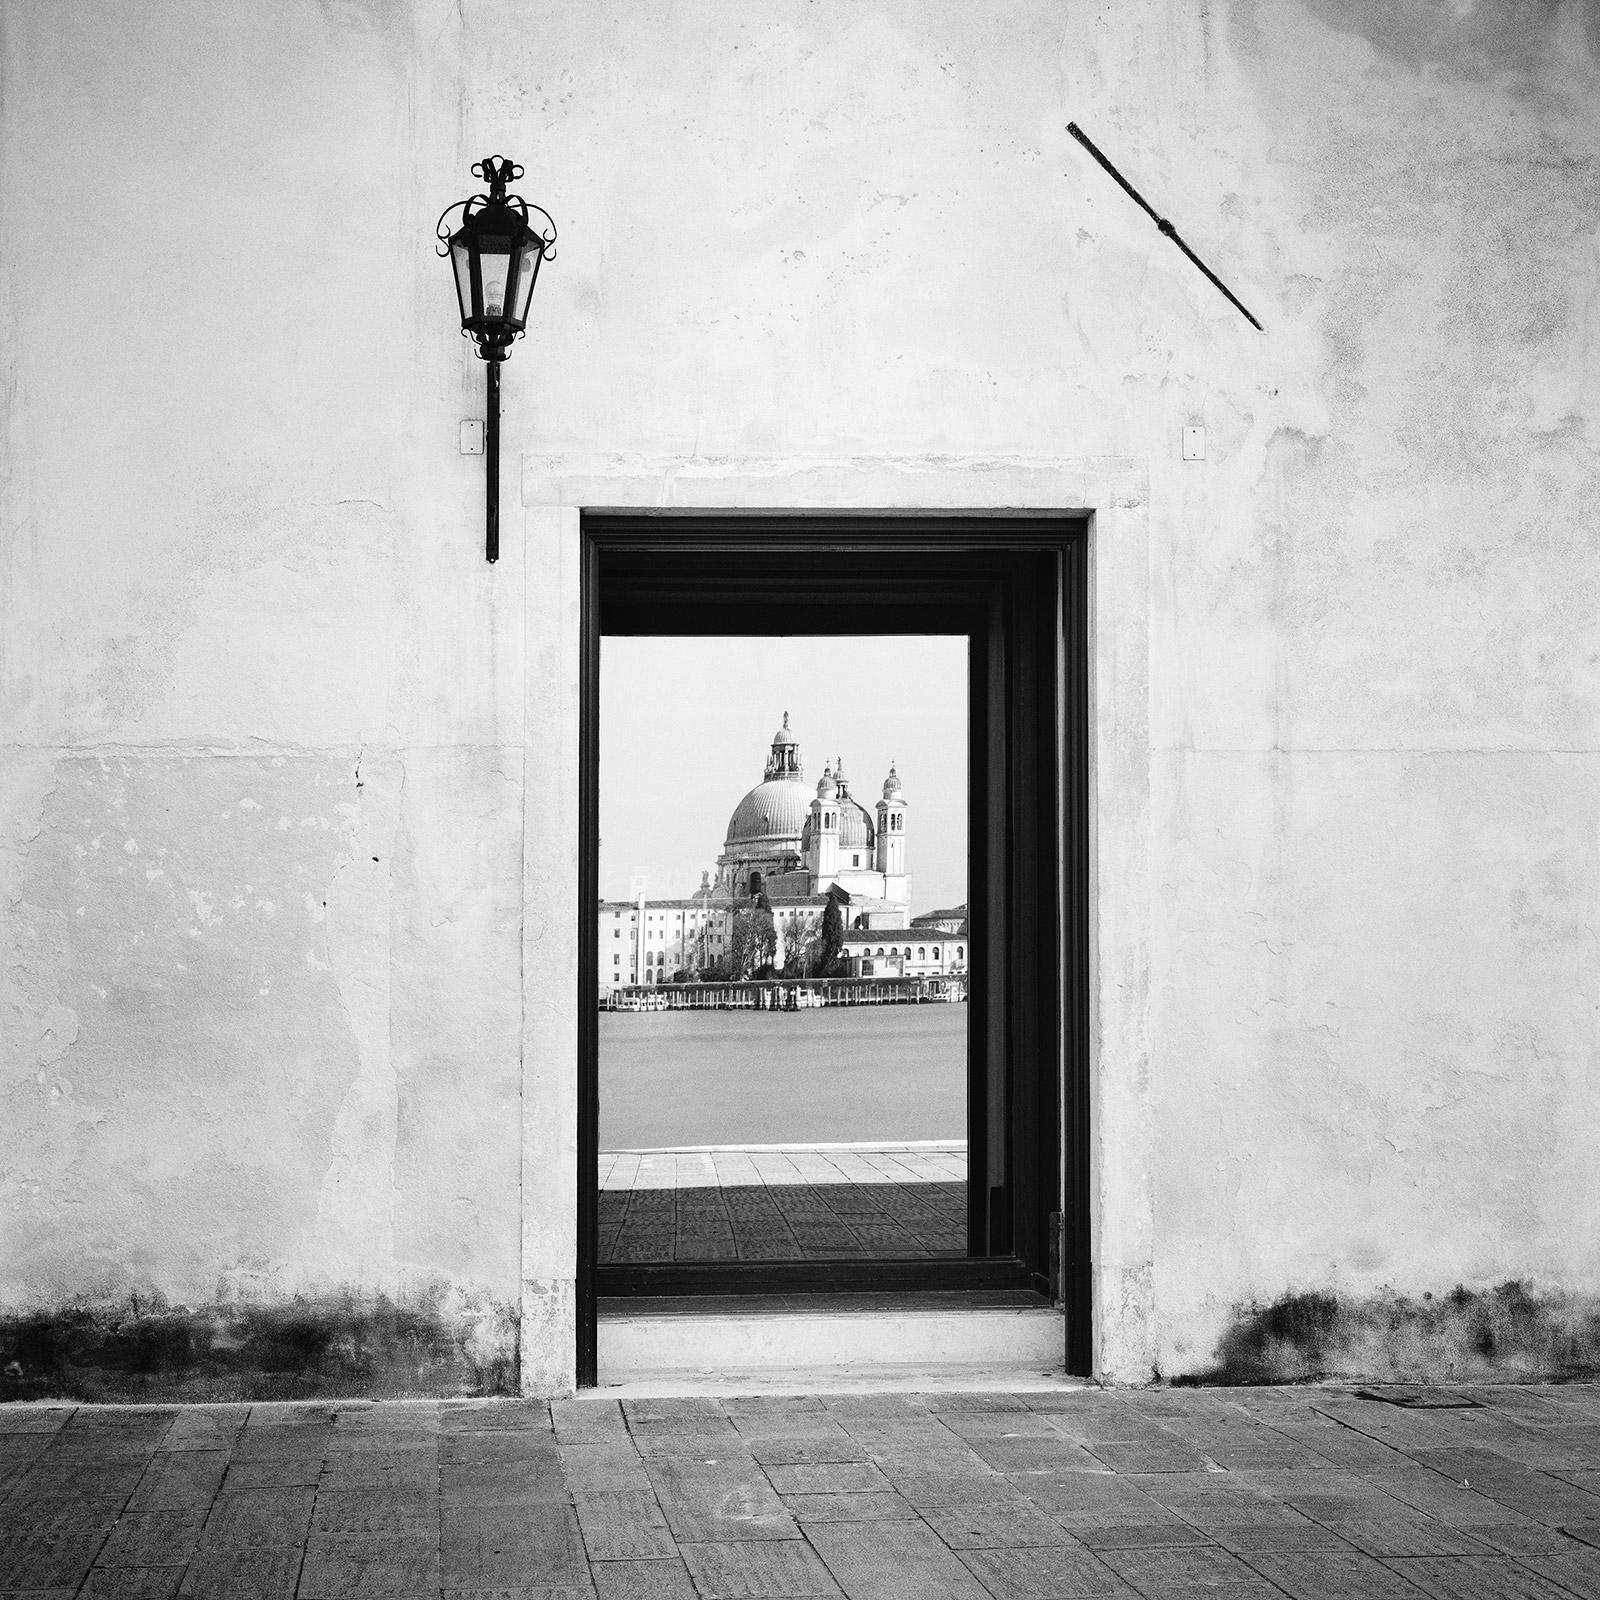 Gerald Berghammer Landscape Photograph – Reflection, Venedig, Italien, Schwarz-Weiß-Fotografiedruck der bildenden Kunst